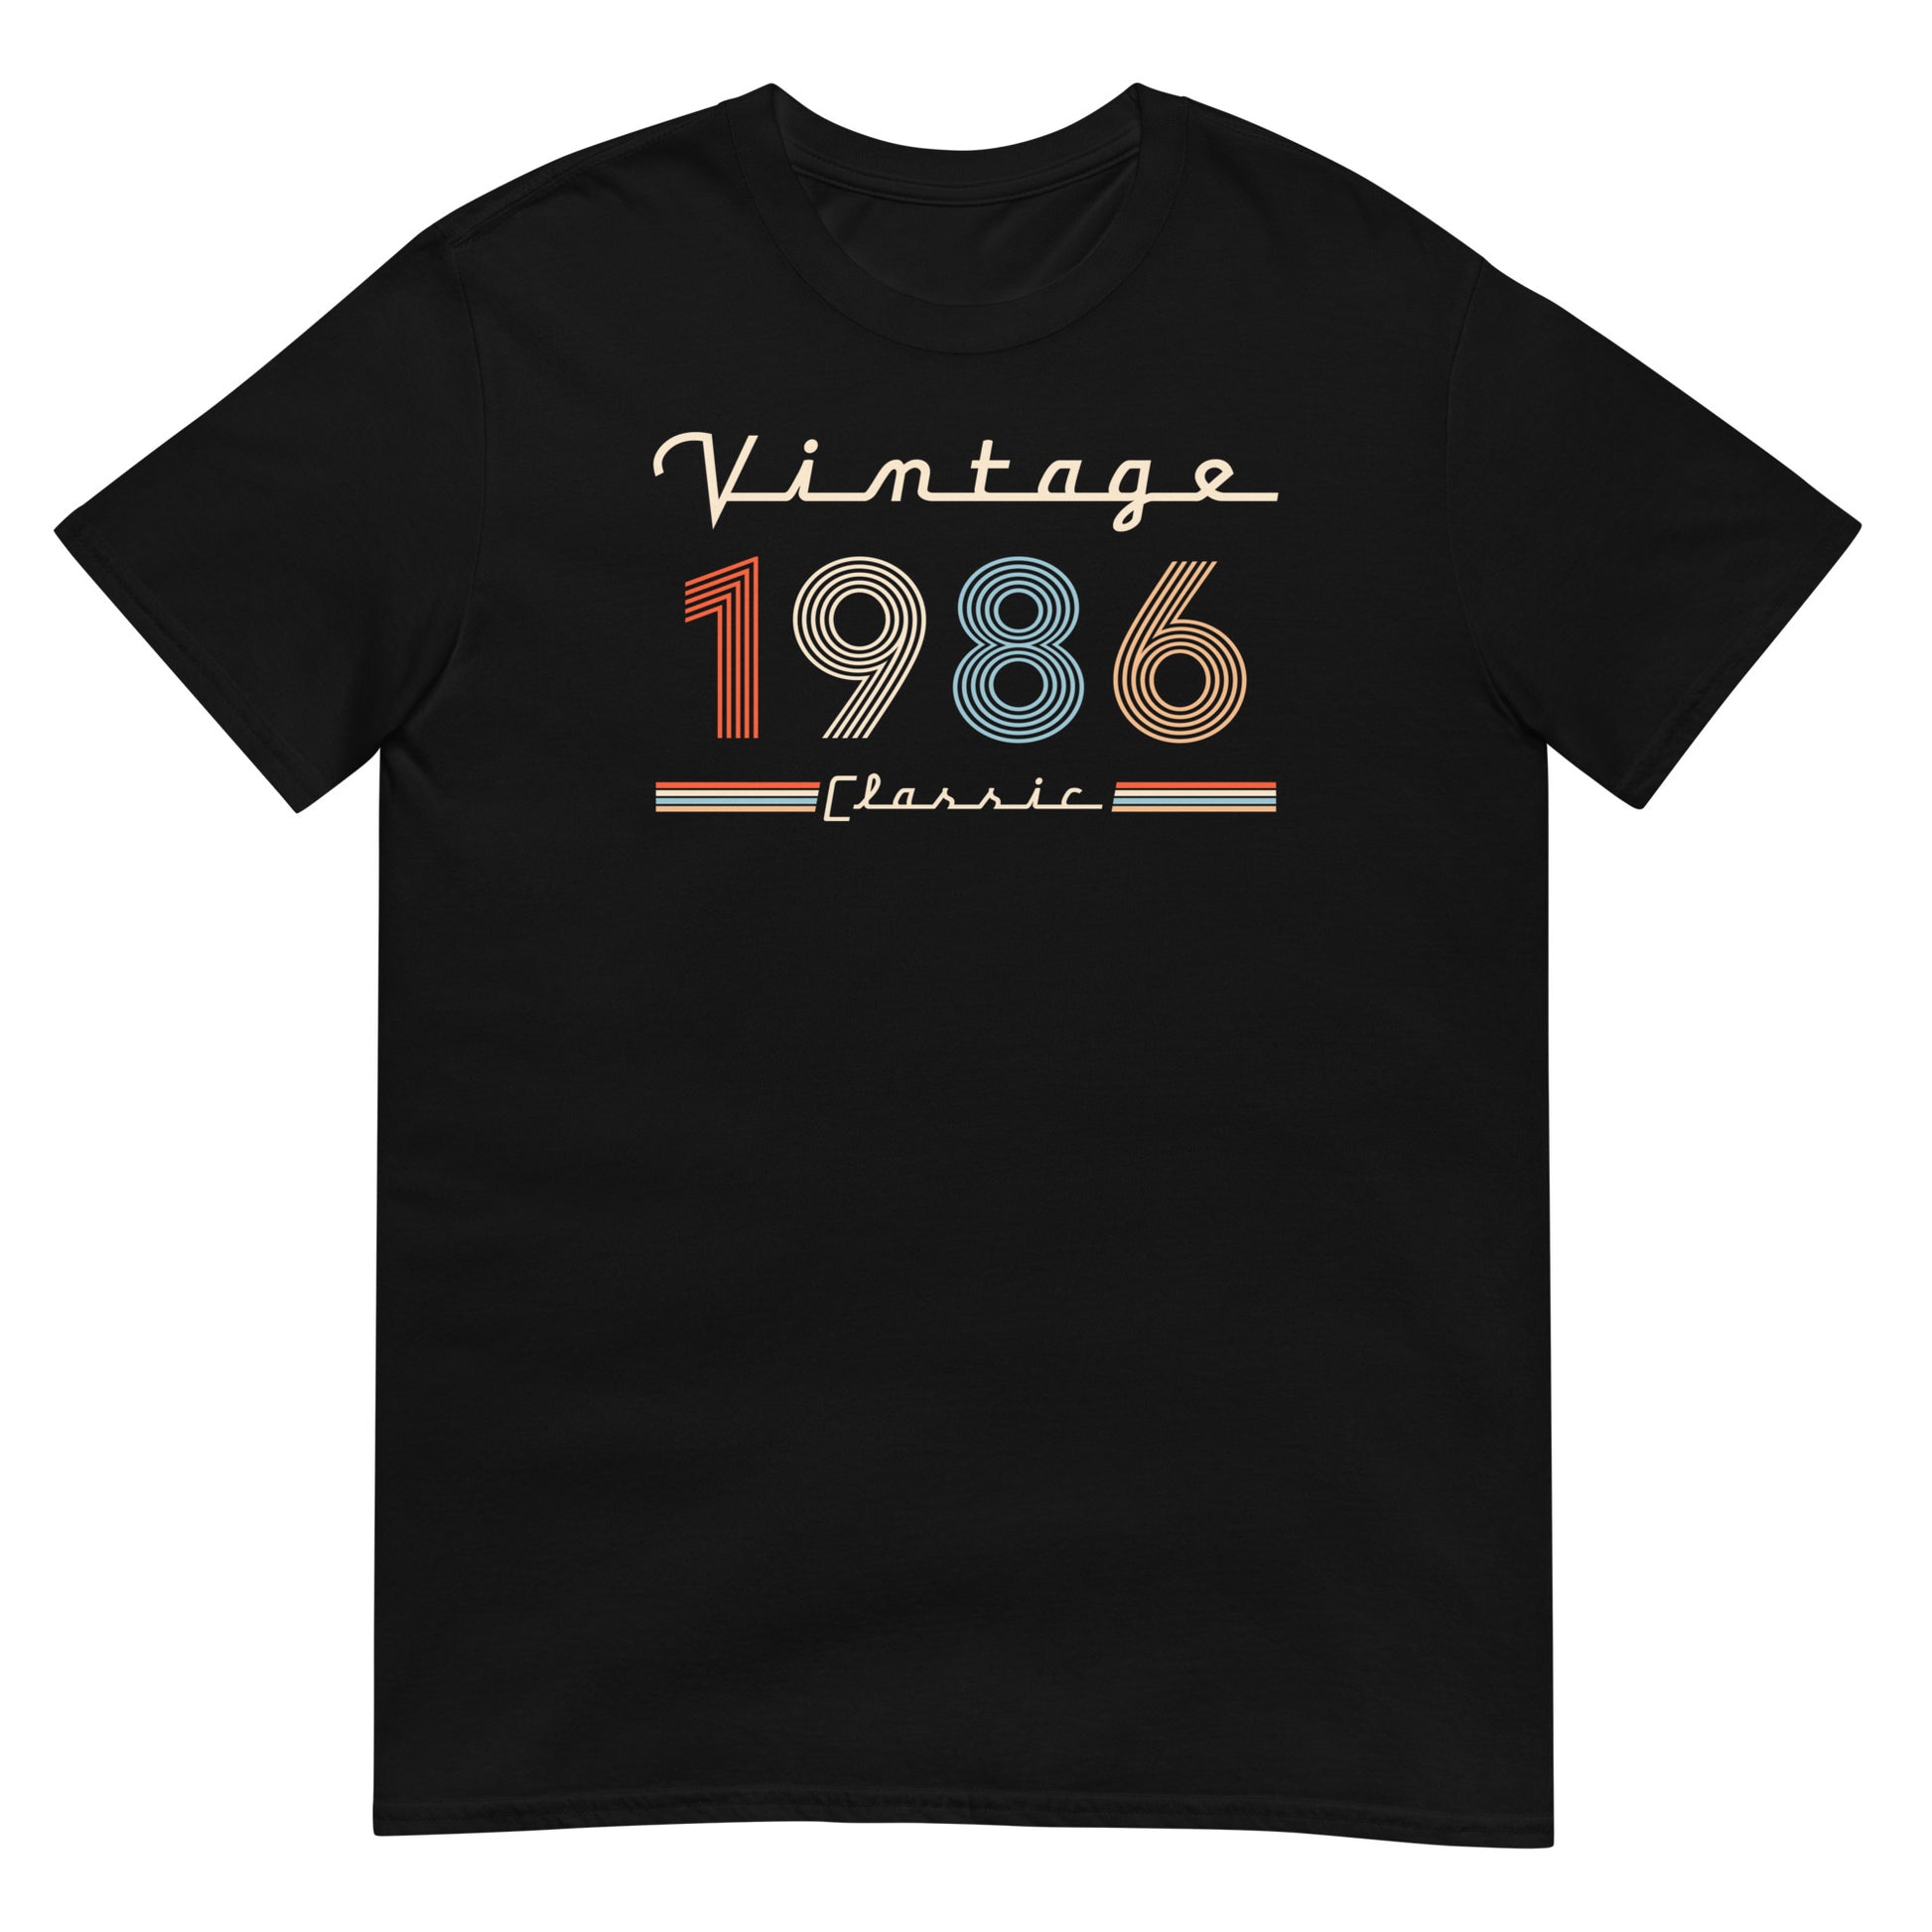 Camiseta 1986 - Vintage Classic - Cumpleaños